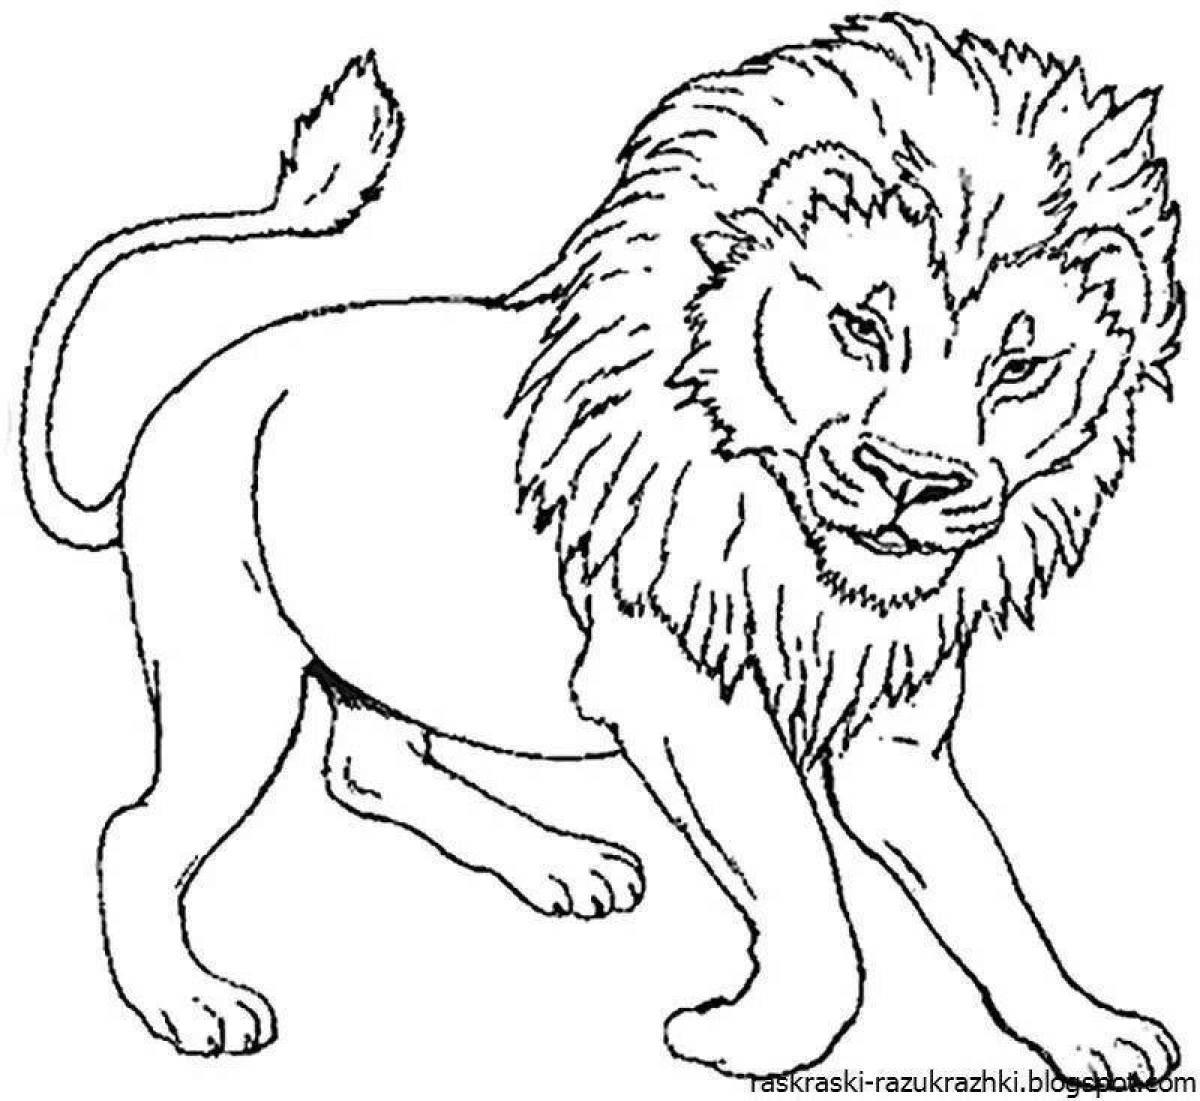 Очаровательная раскраска льва для детей